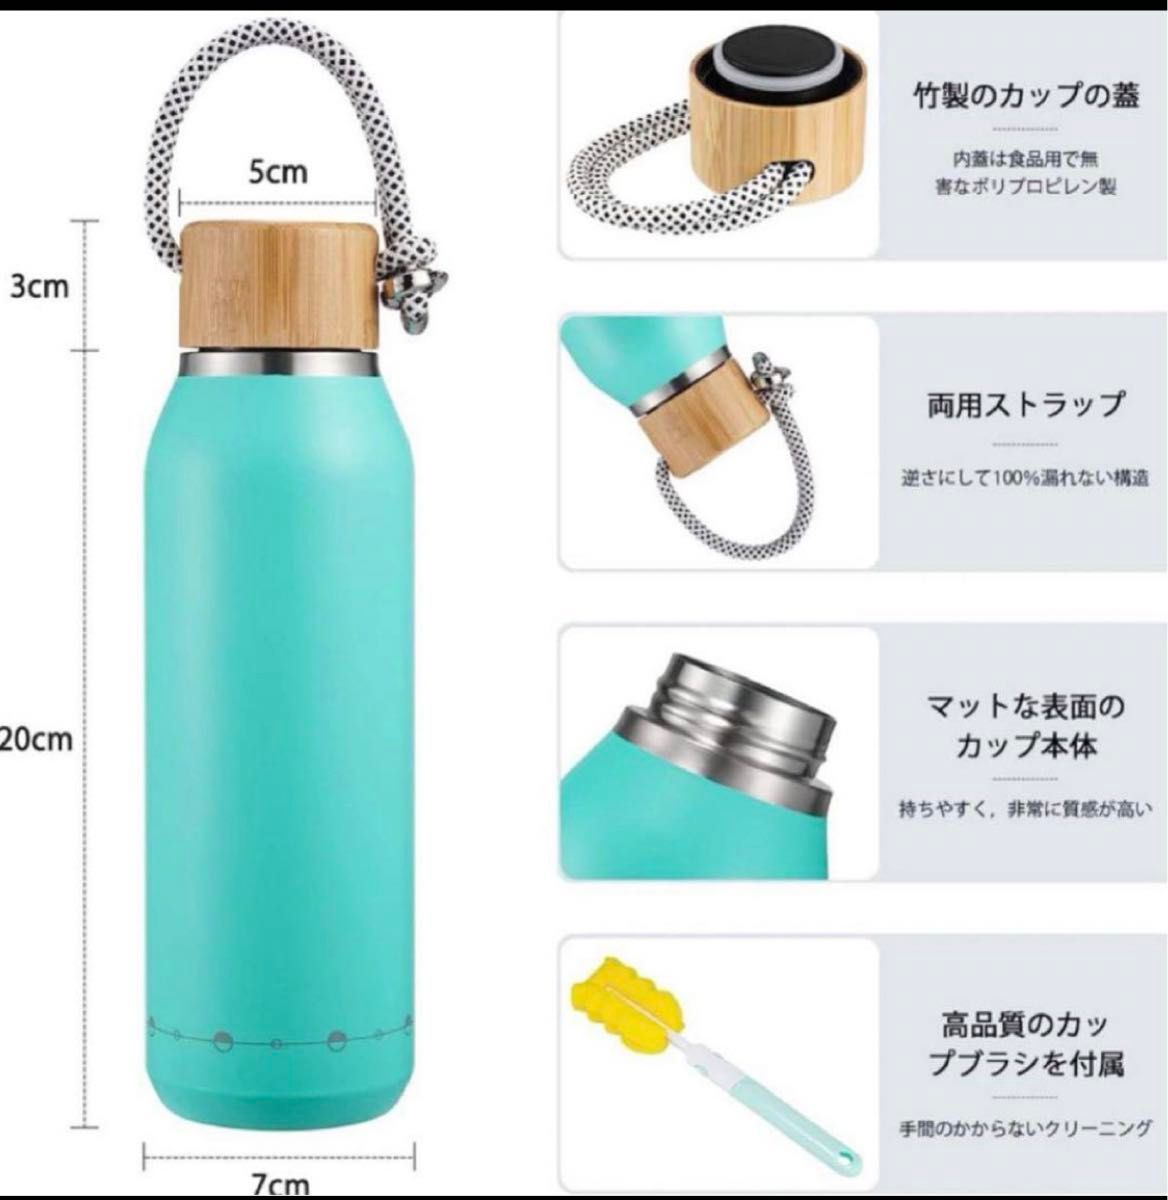 【即購入◯】水筒 500ml 真空断熱 保温保冷 ステンレスボトル カップ